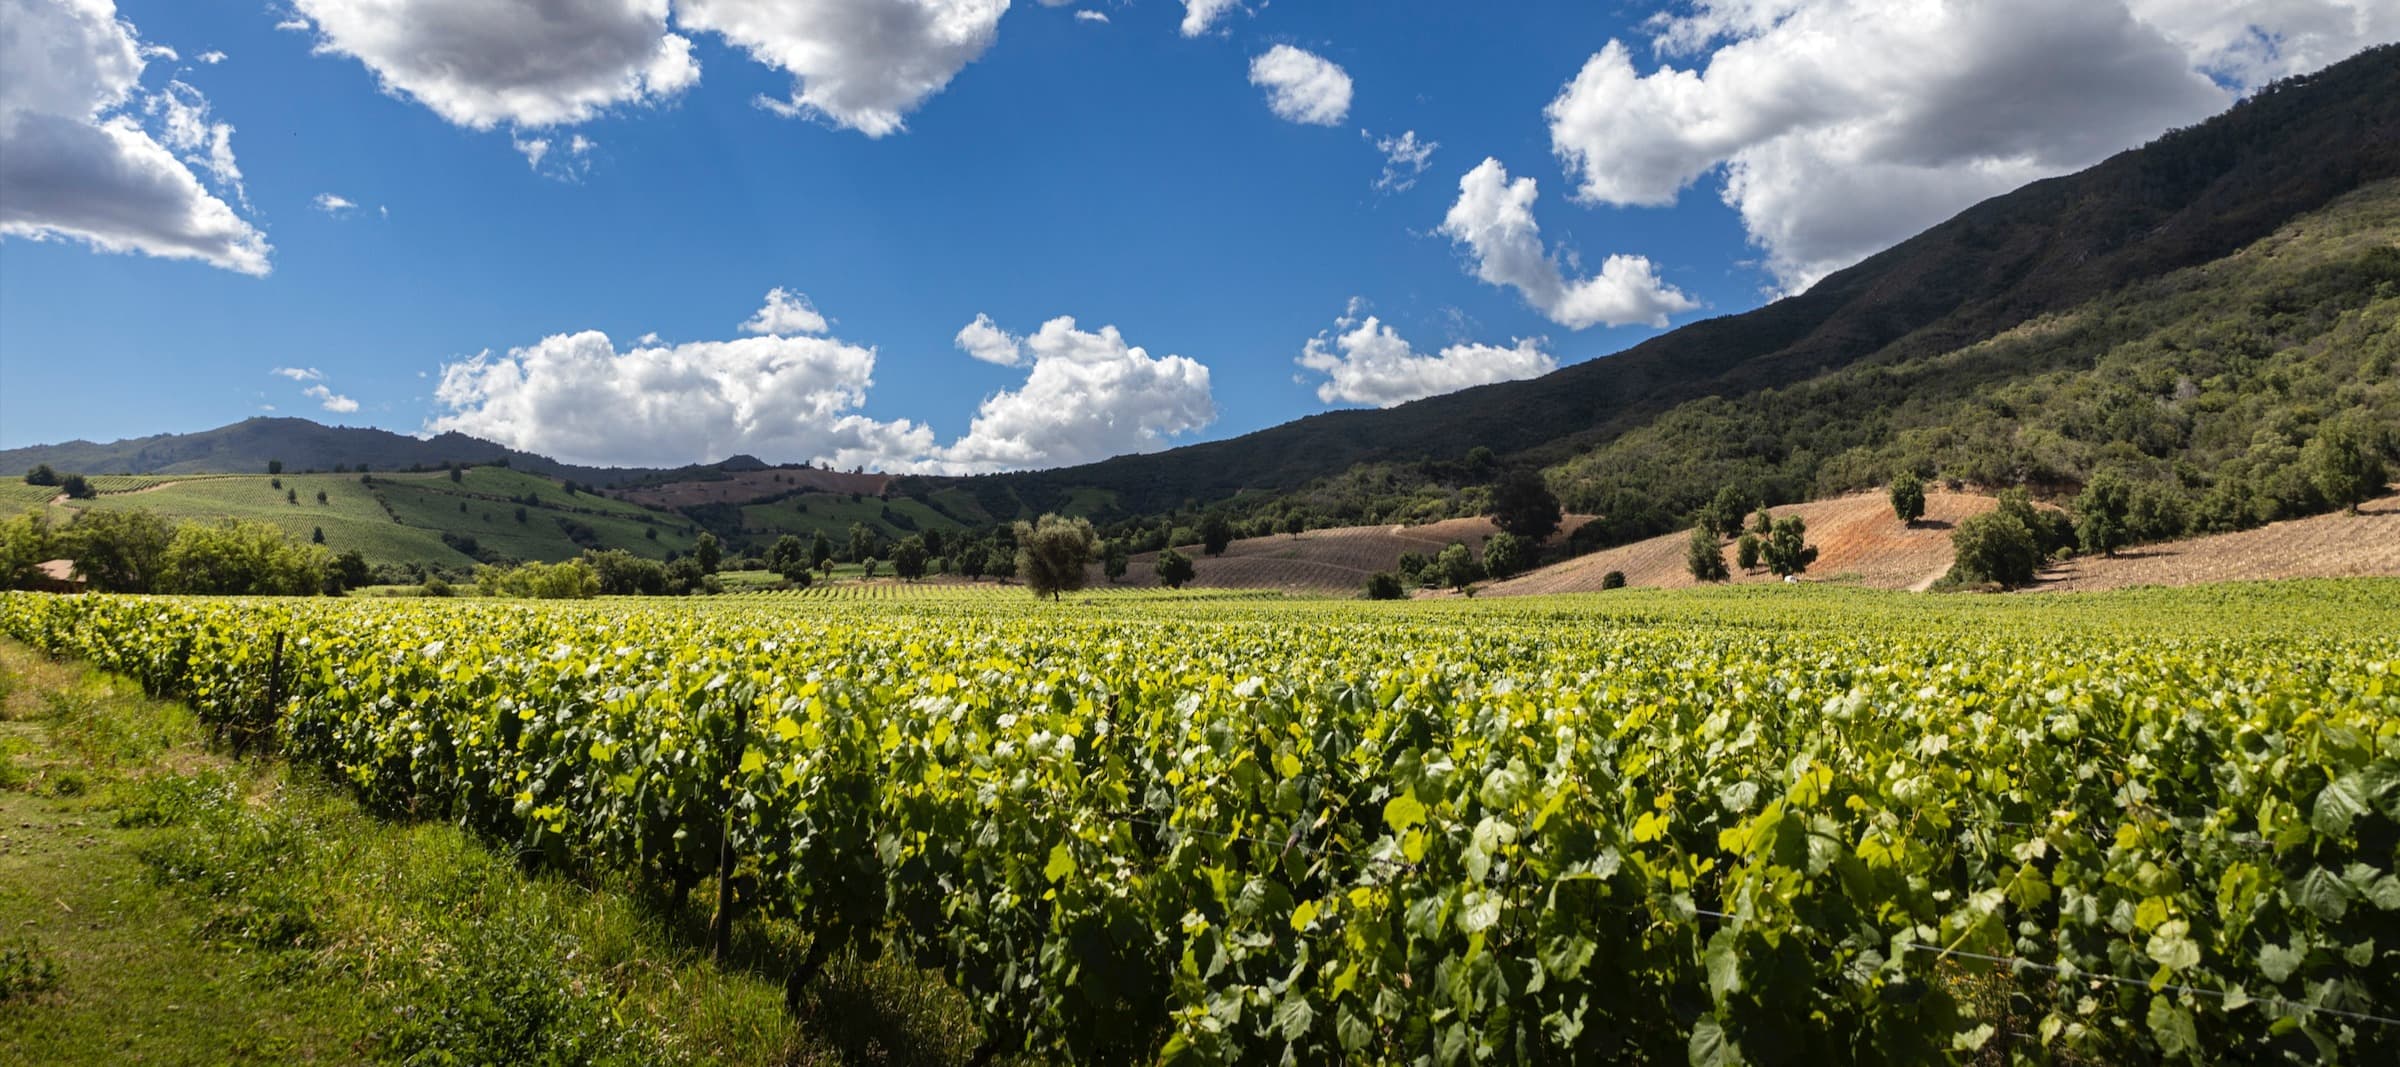 Фото новости: "В Чили могут уничтожить часть виноградников из-за снижения спроса на вино"